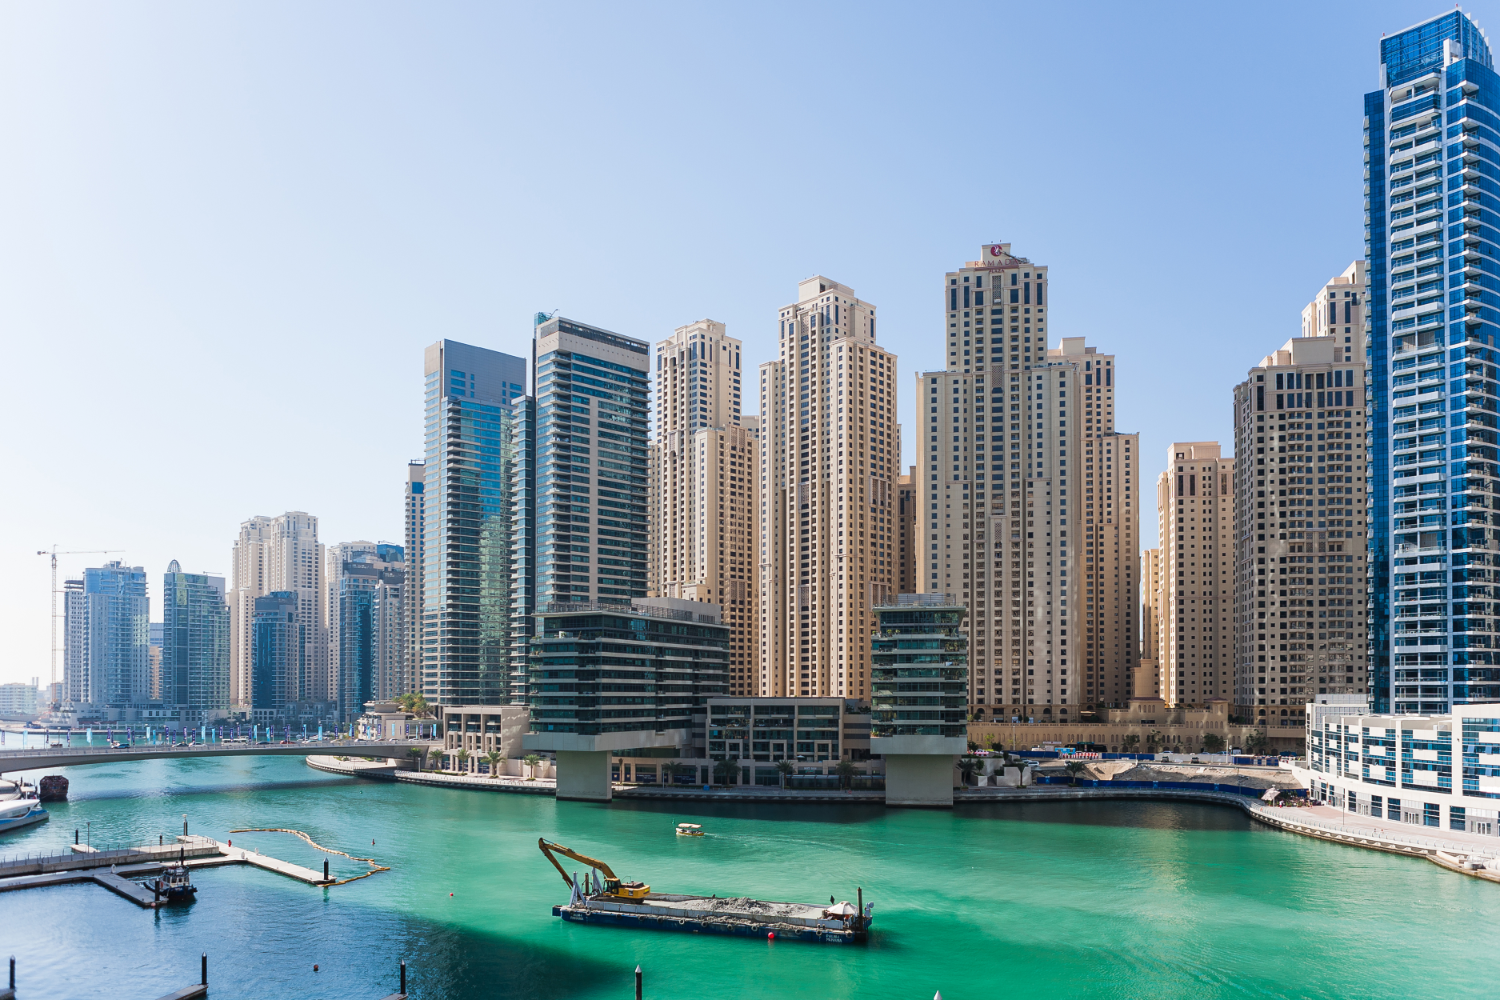 Vista del puerto deportivo de Dubai